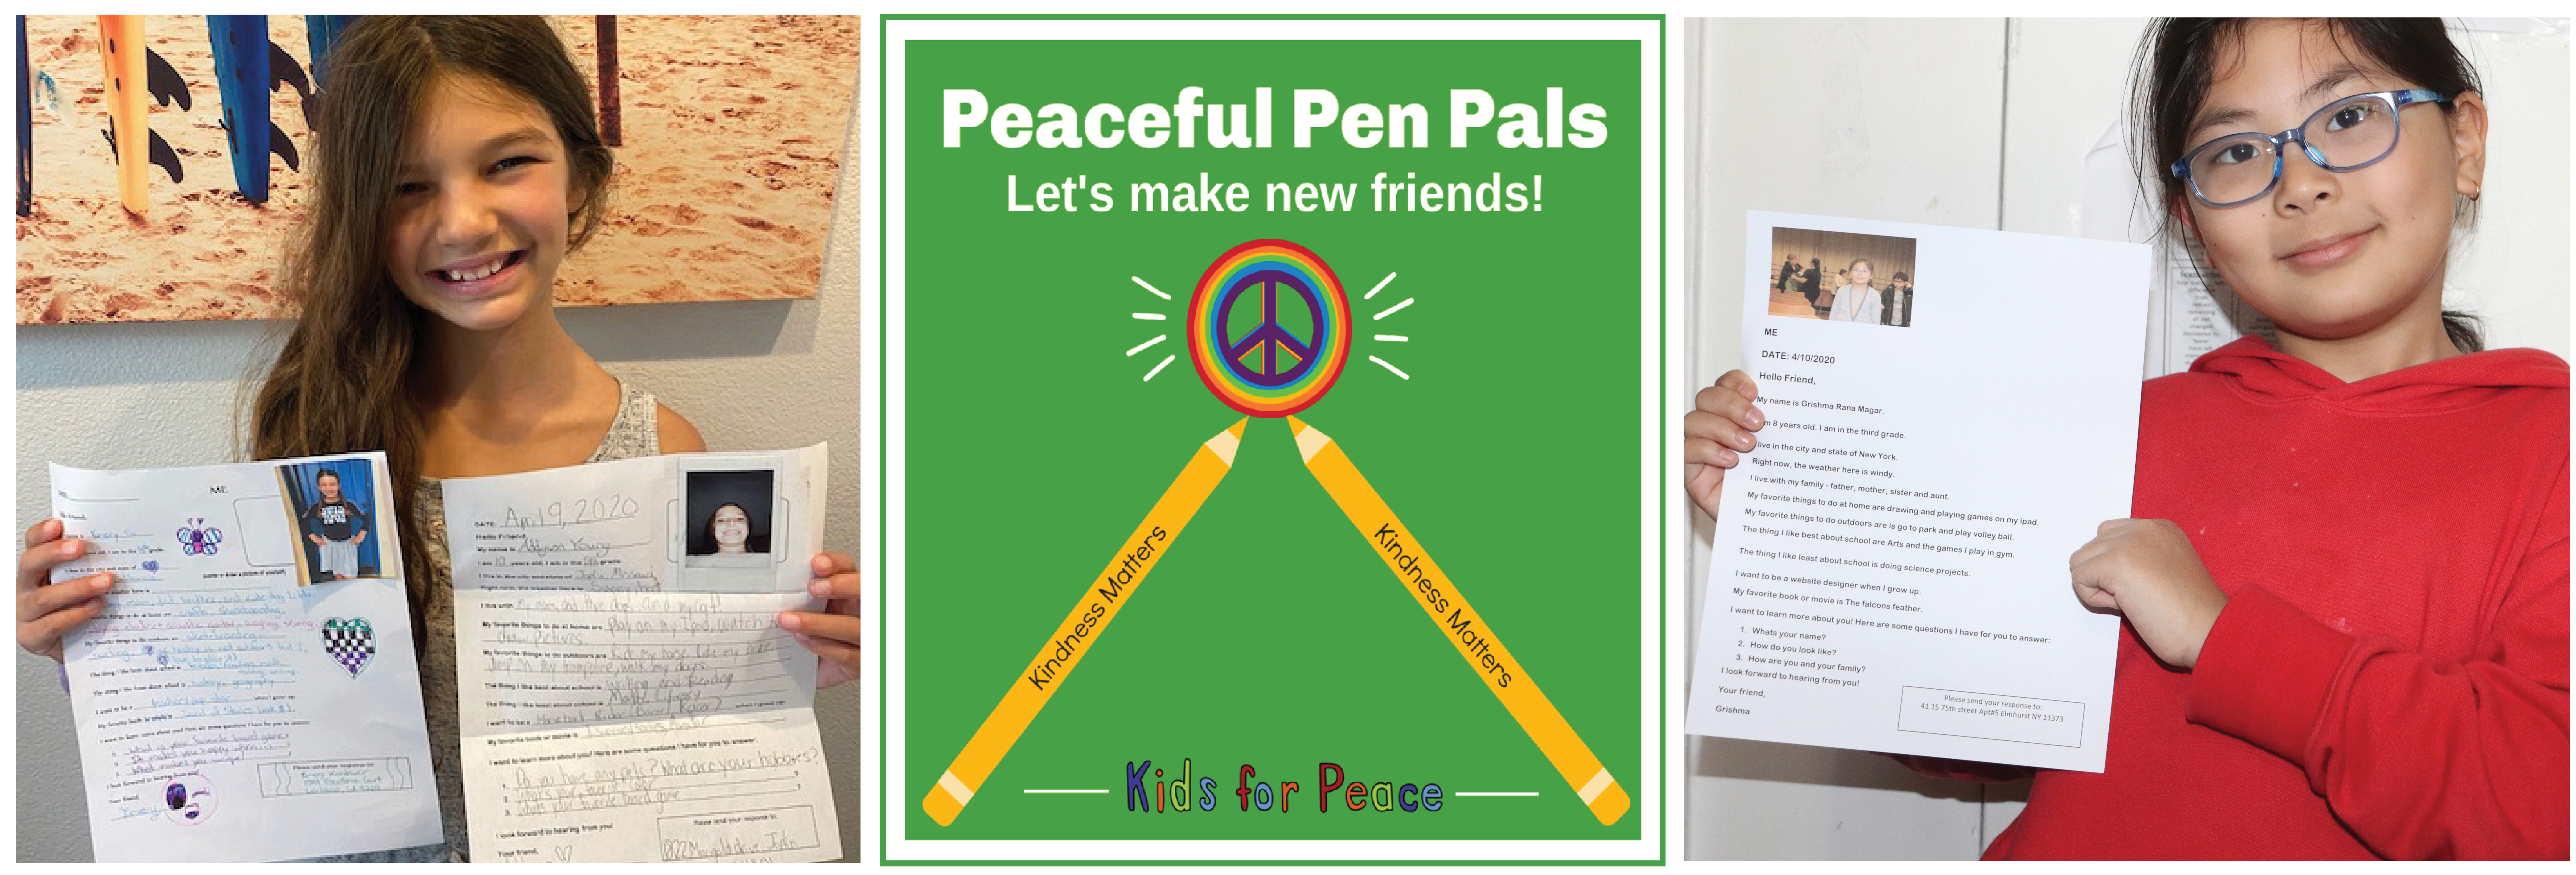 Peaceful-Pen-Pals-Newsletter-Diverse.jpg